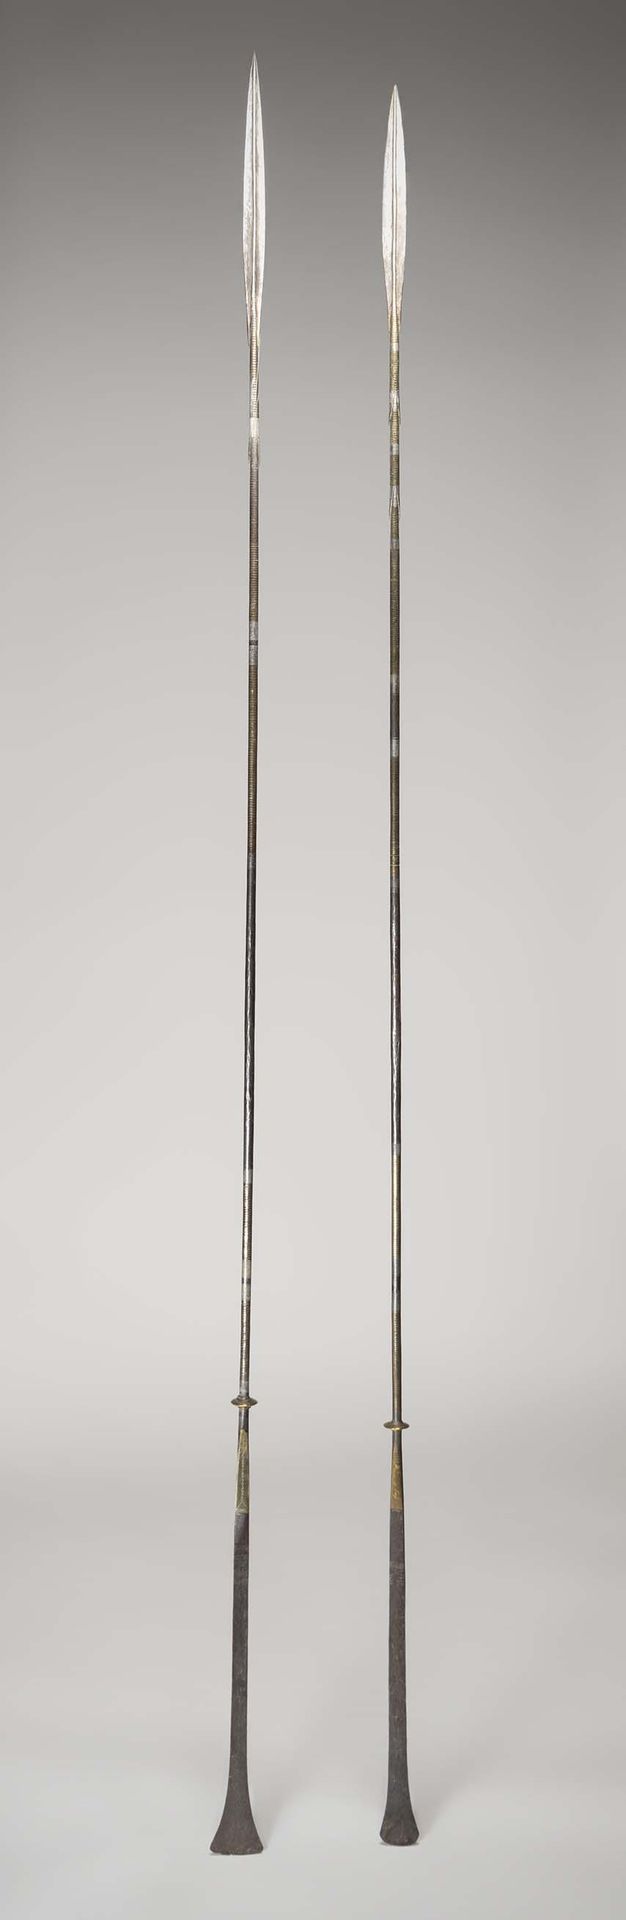 Null 图阿雷格人

(尼日尔) 锻打的铁矛上镶嵌着黄铜，刻有几何图案。

Morin-Néron博士收藏

 高：203厘米